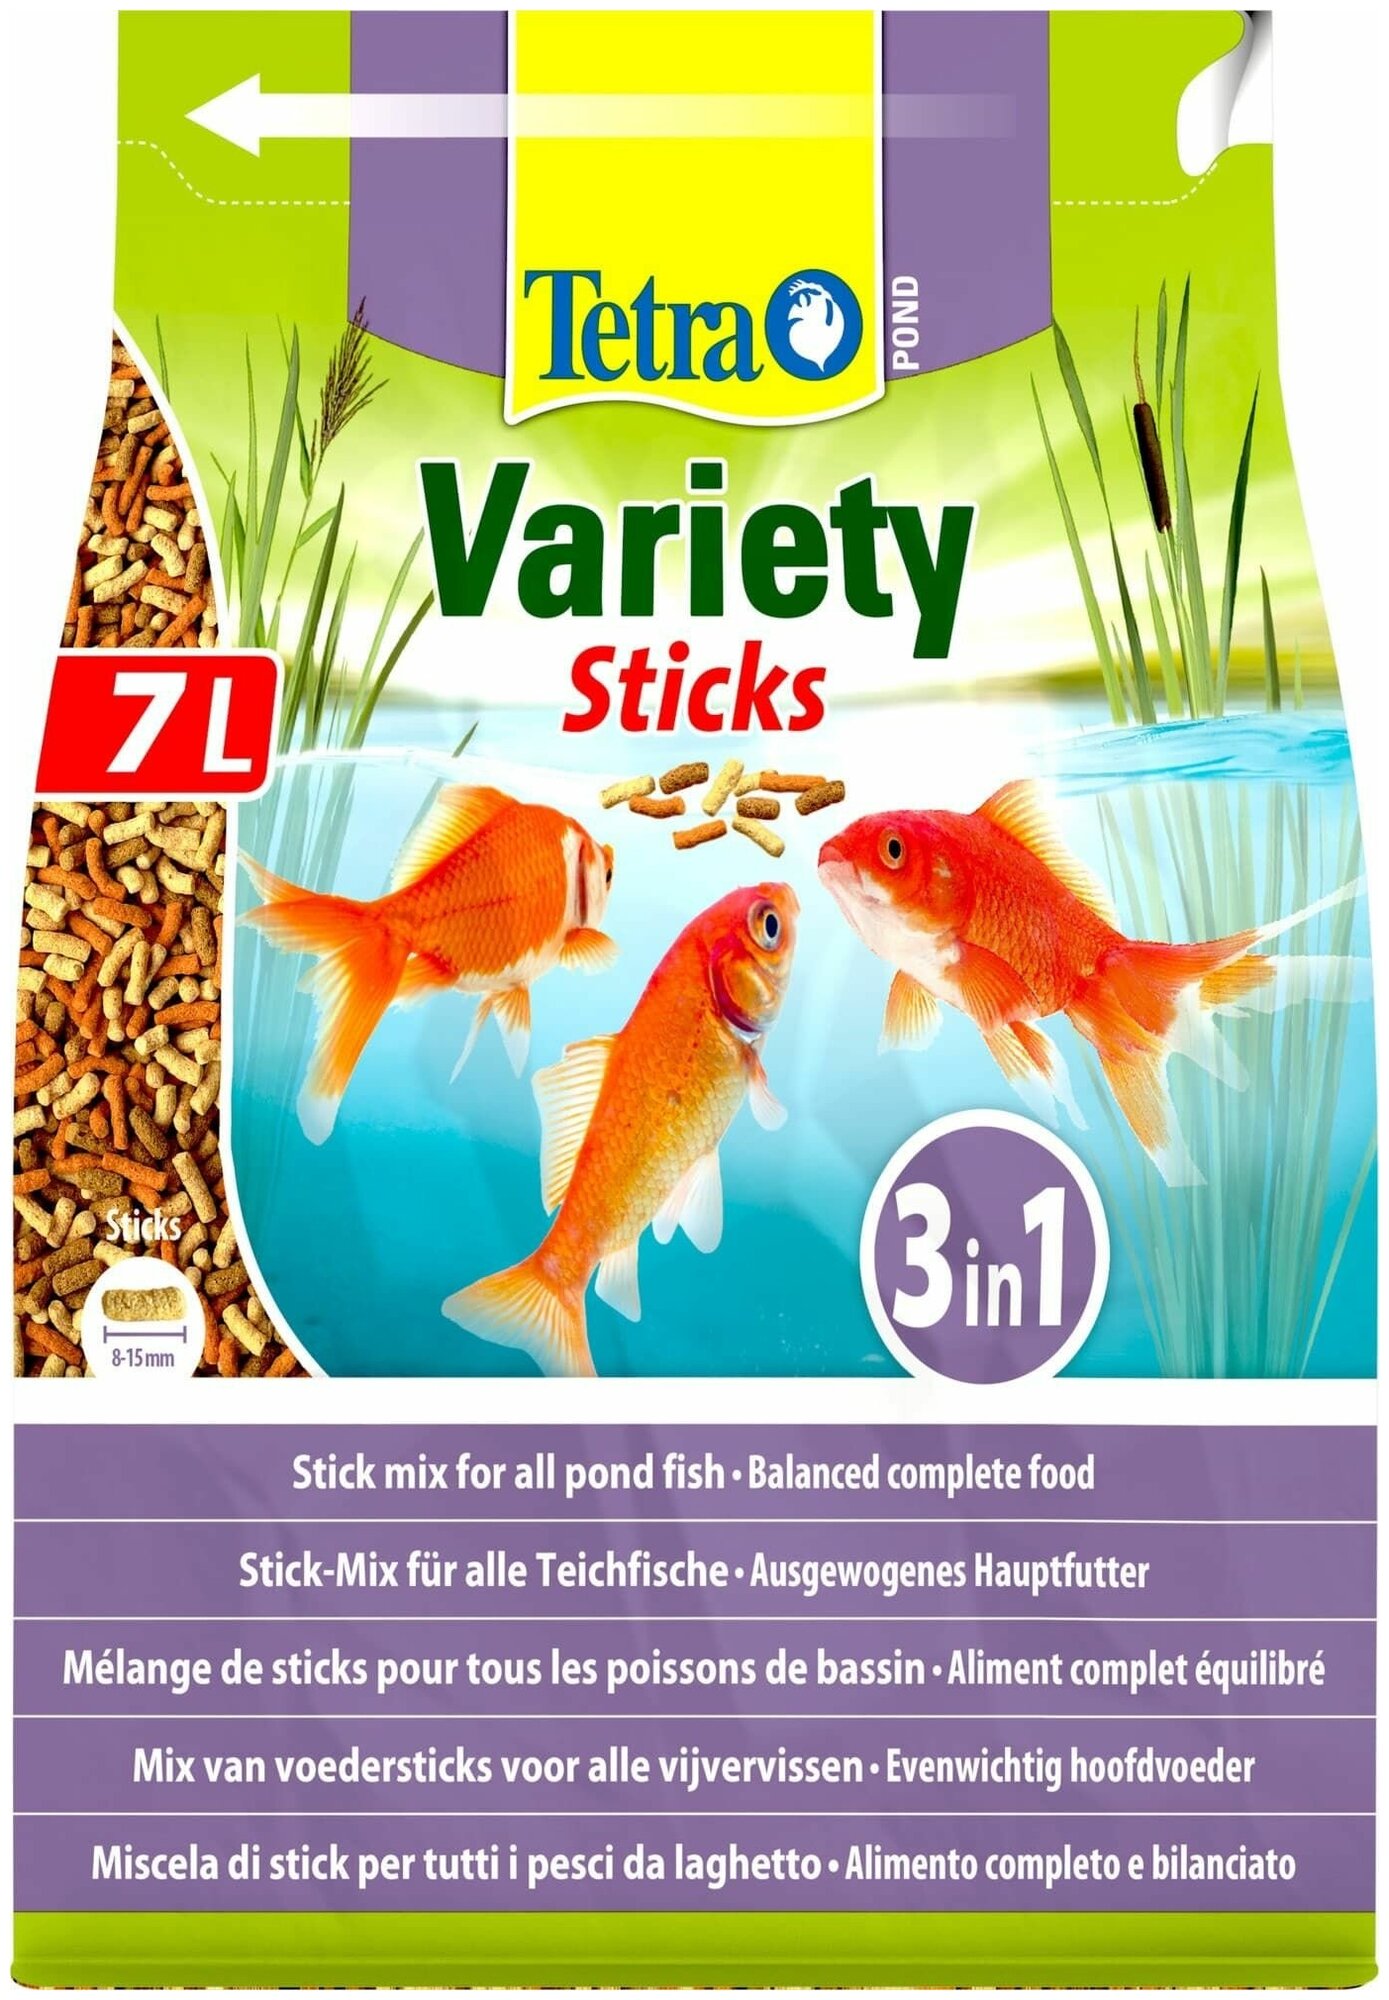 Корм для прудовых рыб Tetra Pond Variety Sticks 7л/1020гр смесь палочки - фотография № 13